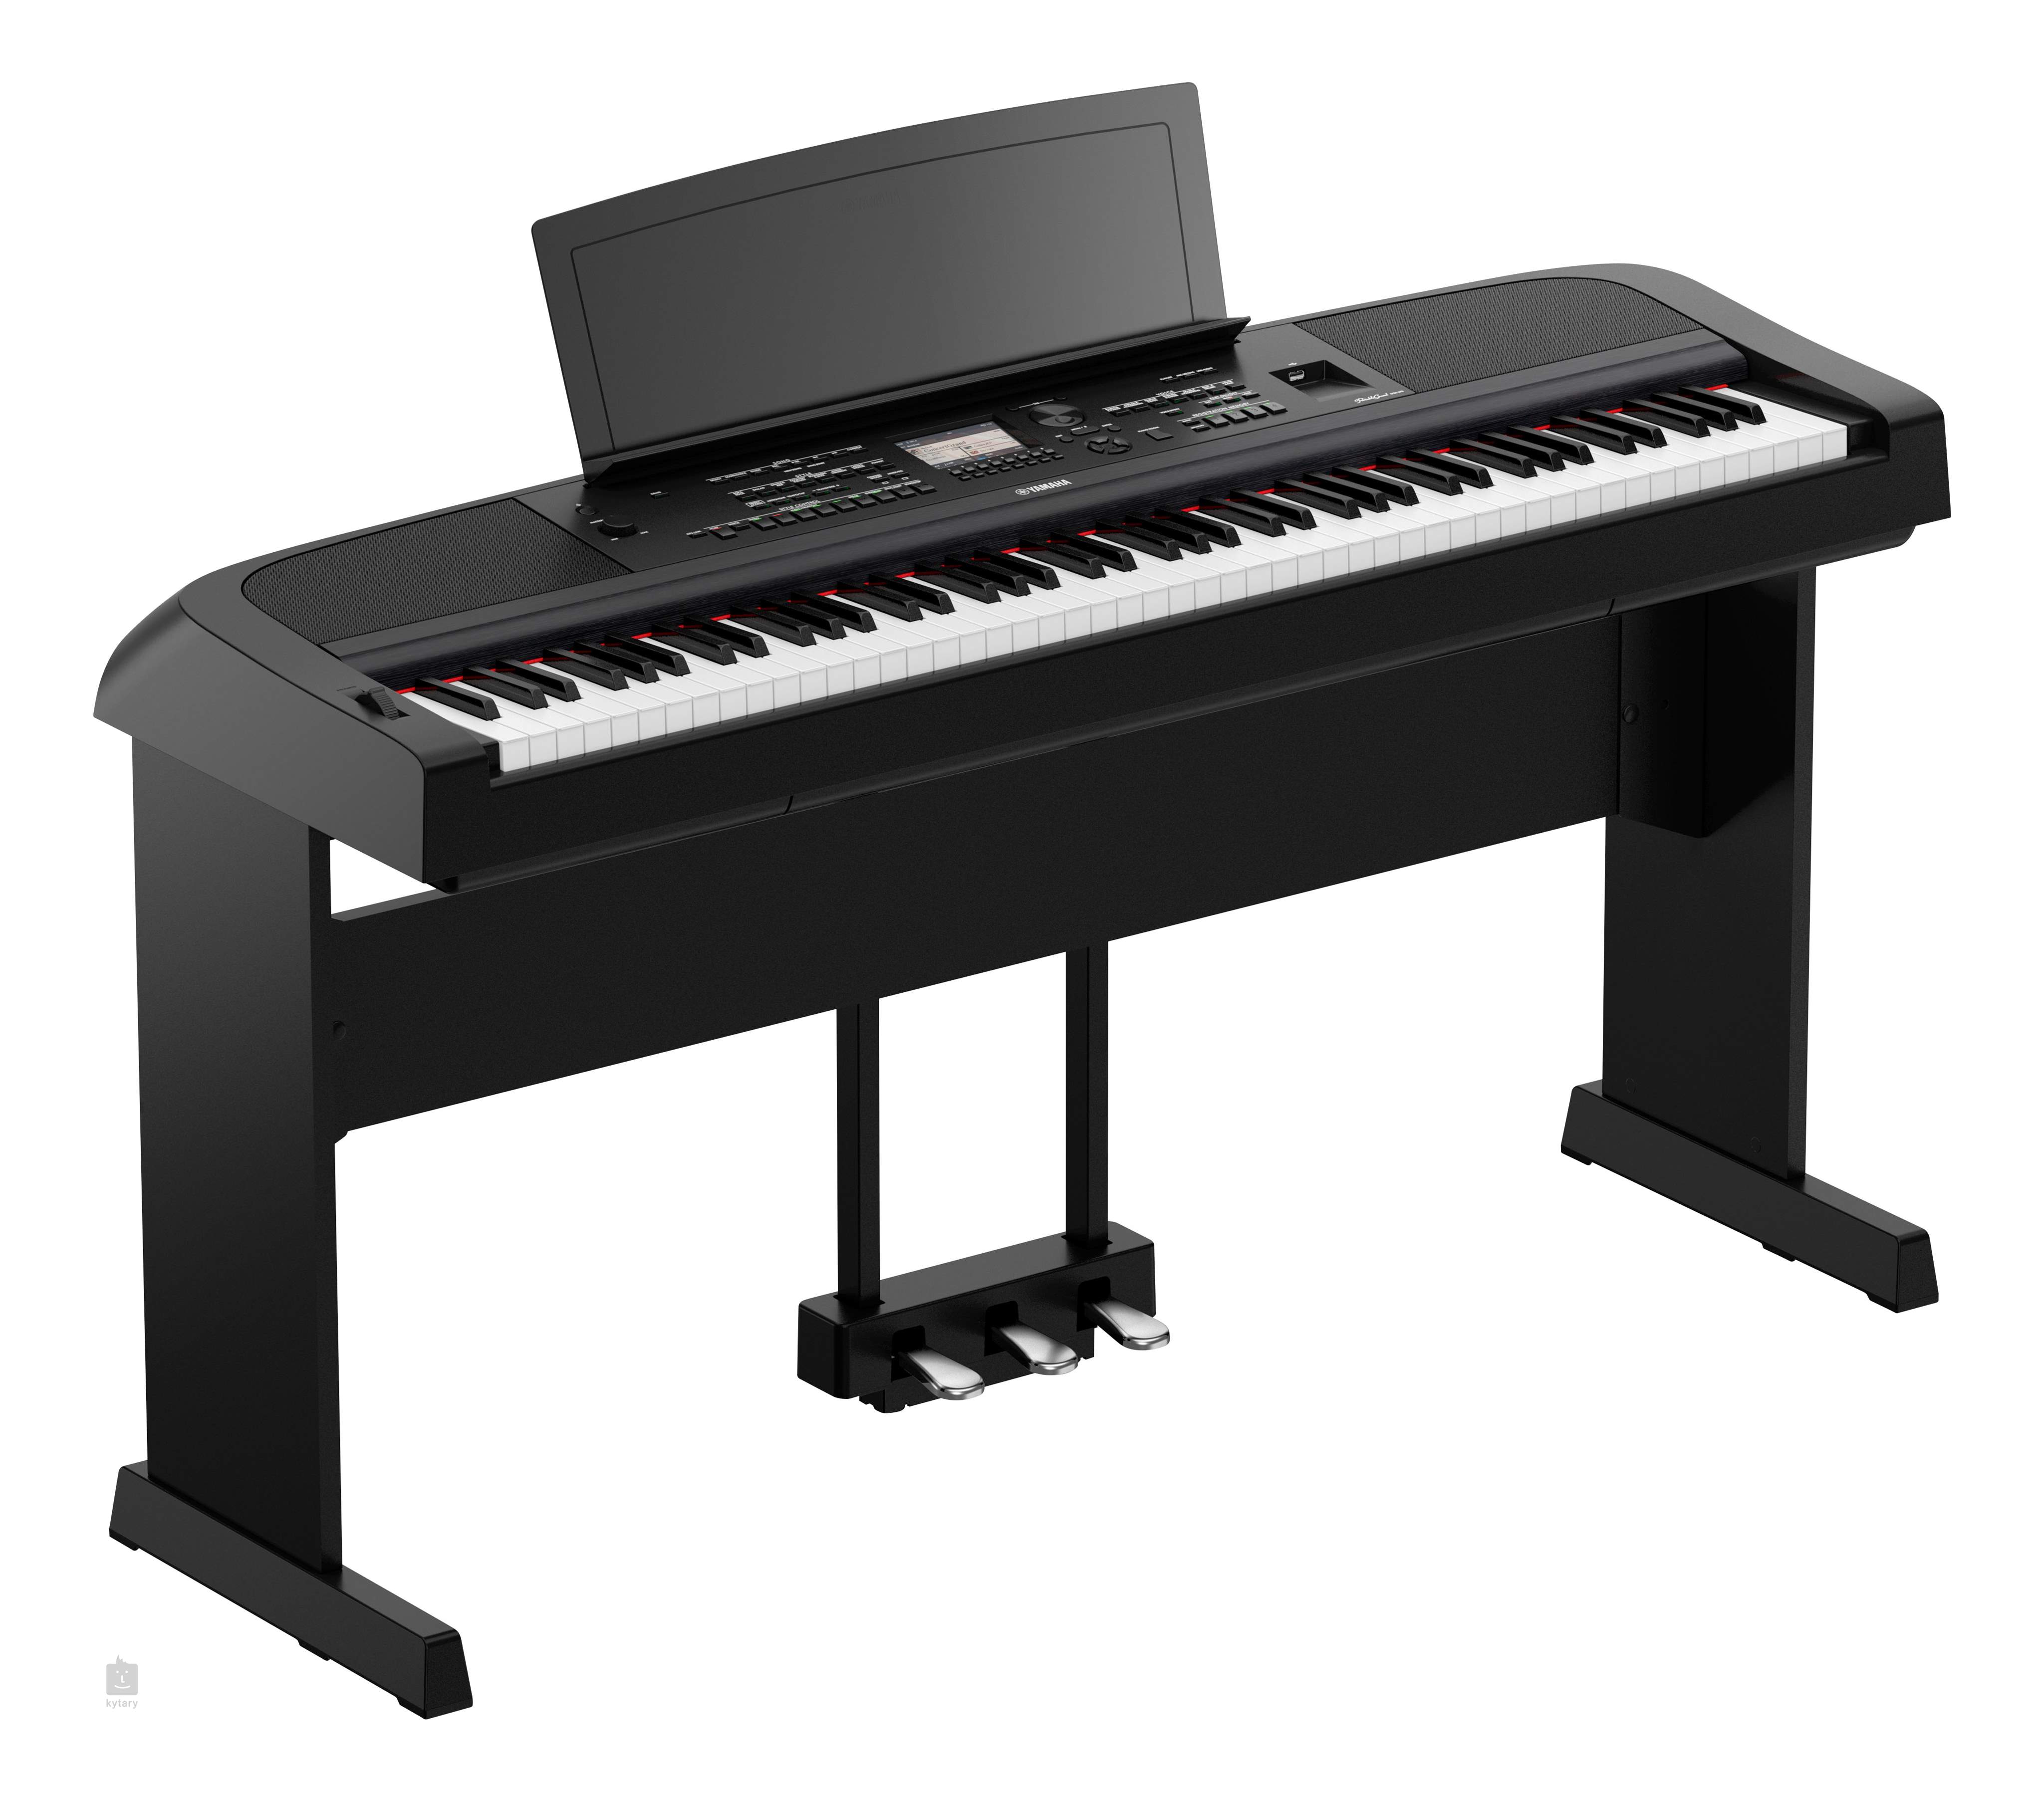 YAMAHA DGX-670B Piano de scene numérique portable